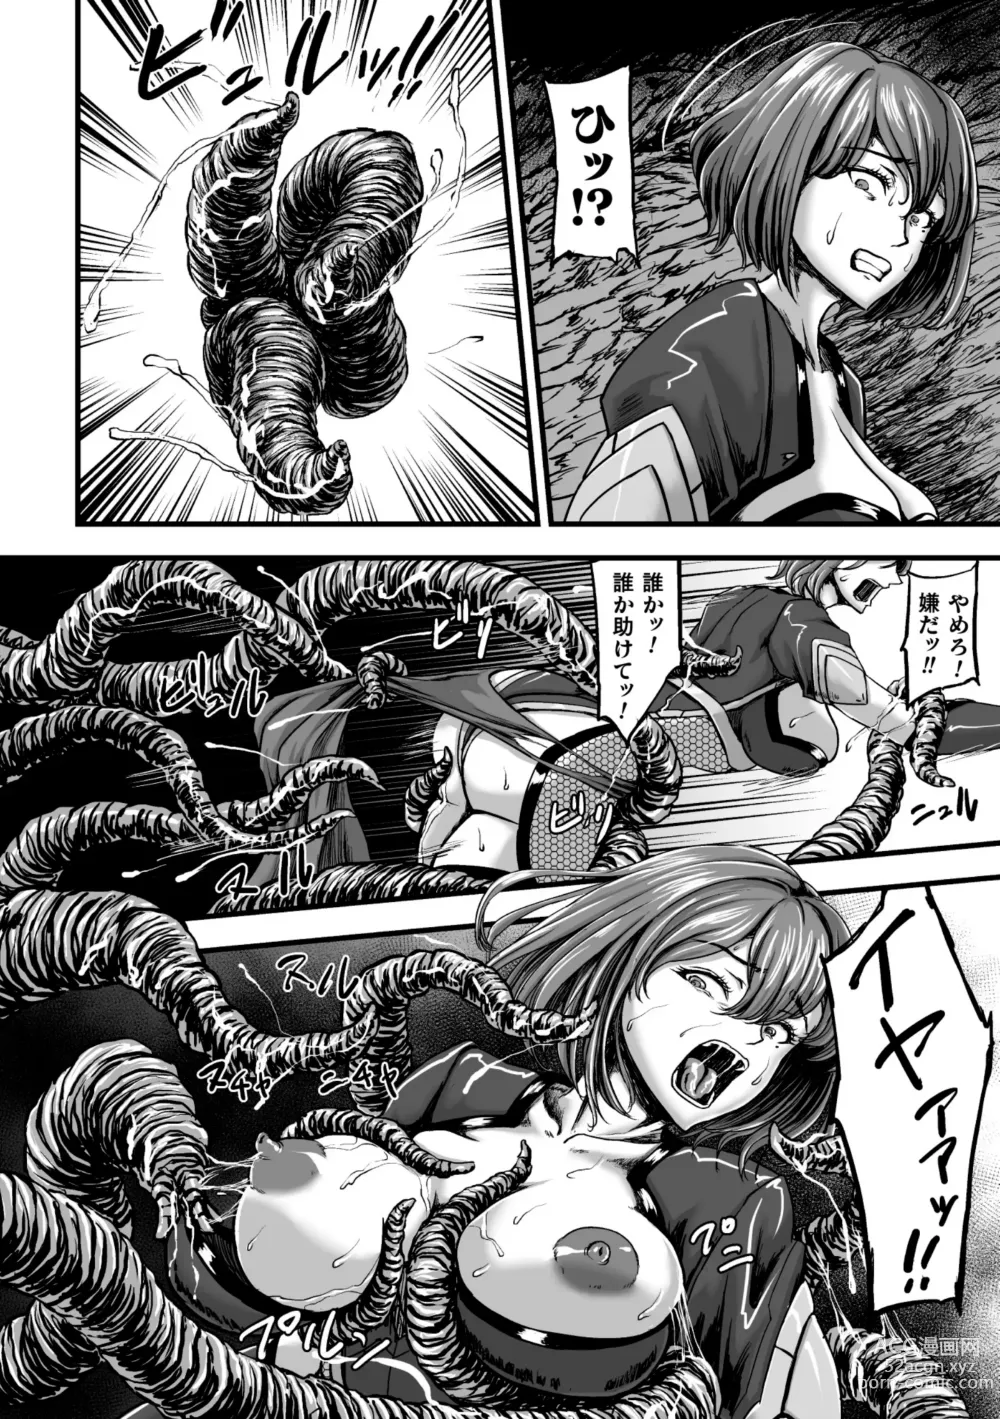 Page 14 of manga Kangoku Tentacle Battleship Episode 3